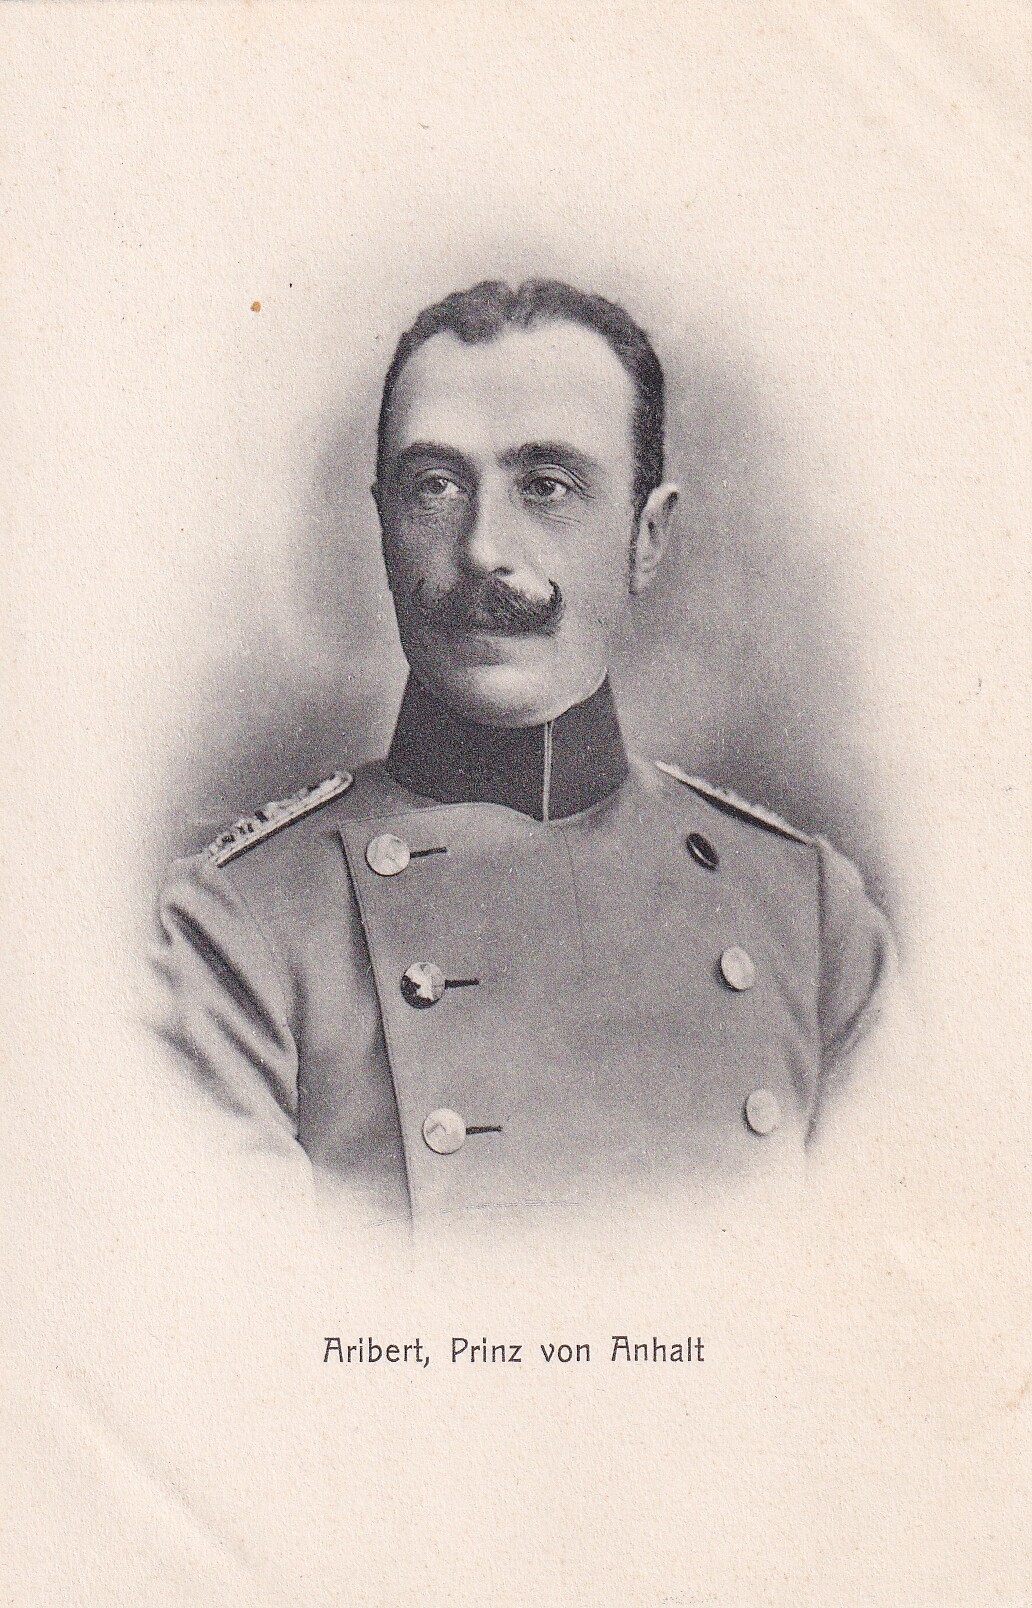 Bildpostkarte mit Foto des Prinzen Aribert von Anhalt, um 1900 (Schloß Wernigerode GmbH RR-F)